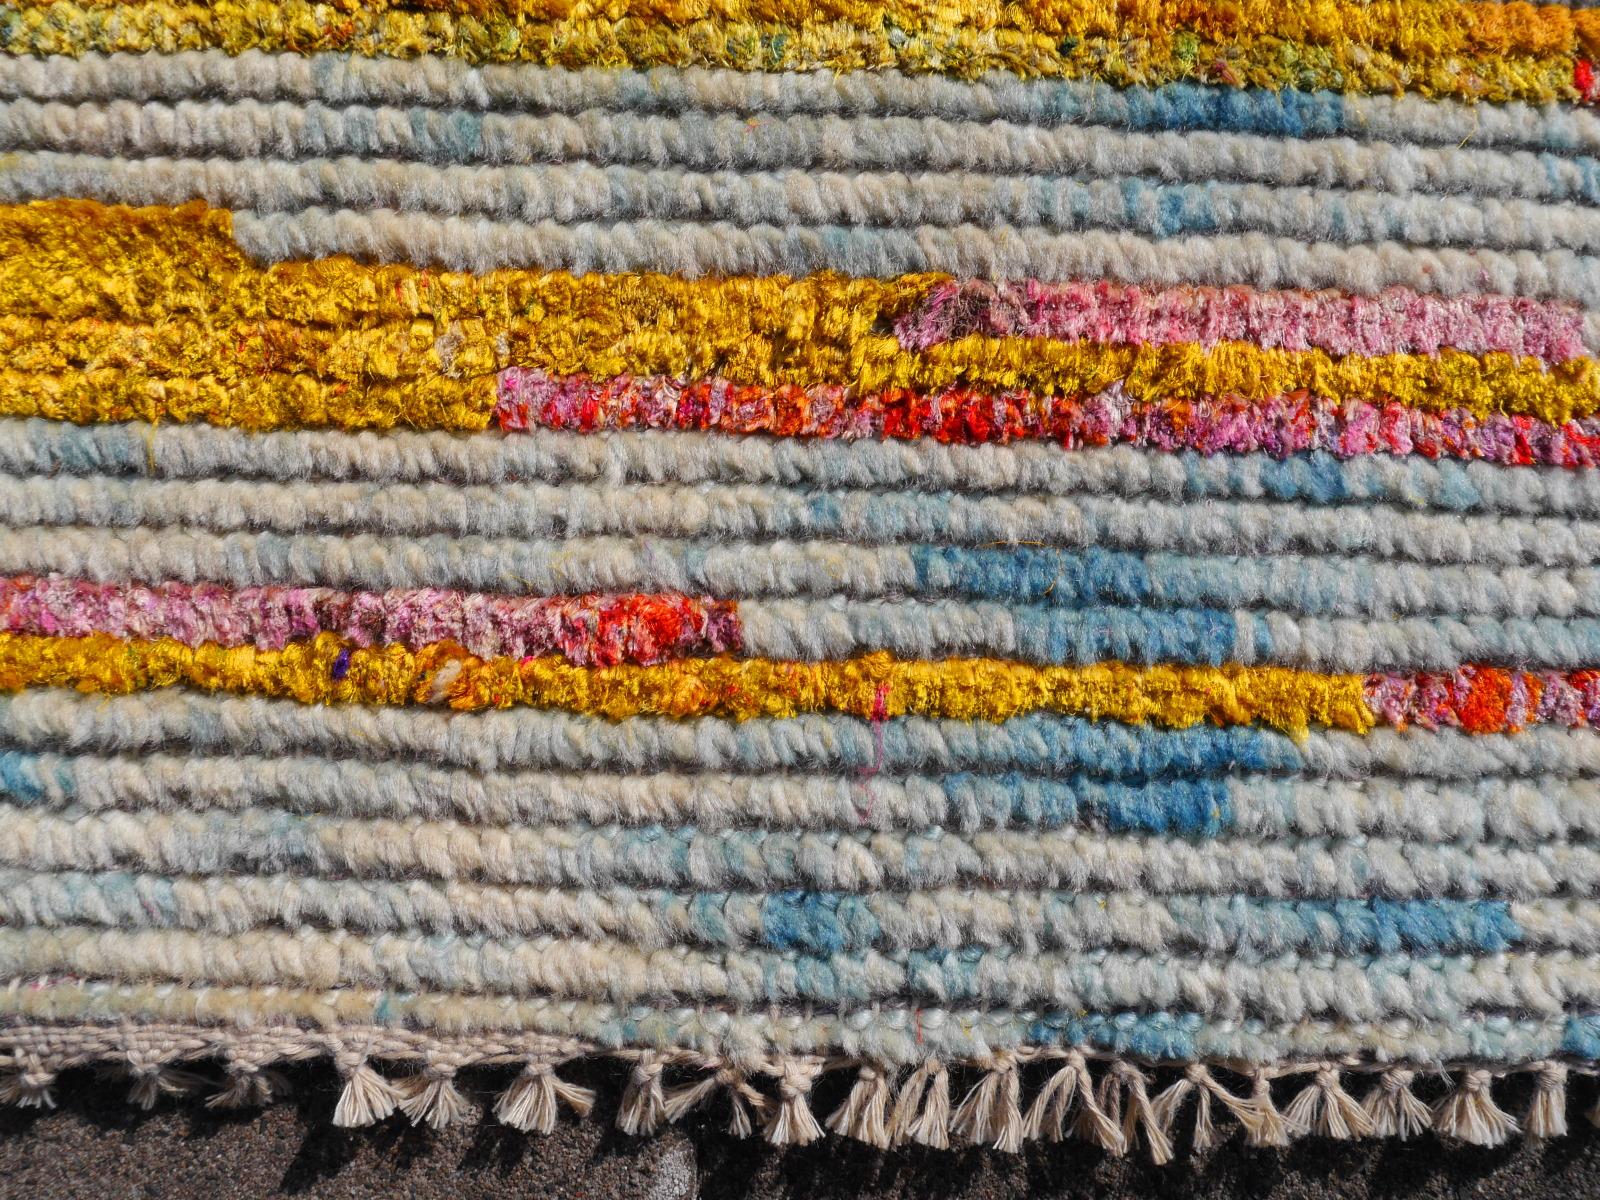 Un magnifique tapis au design contemporain, noué à la main avec de la soie Sari (60%) et de la laine (40%).

Collection : 